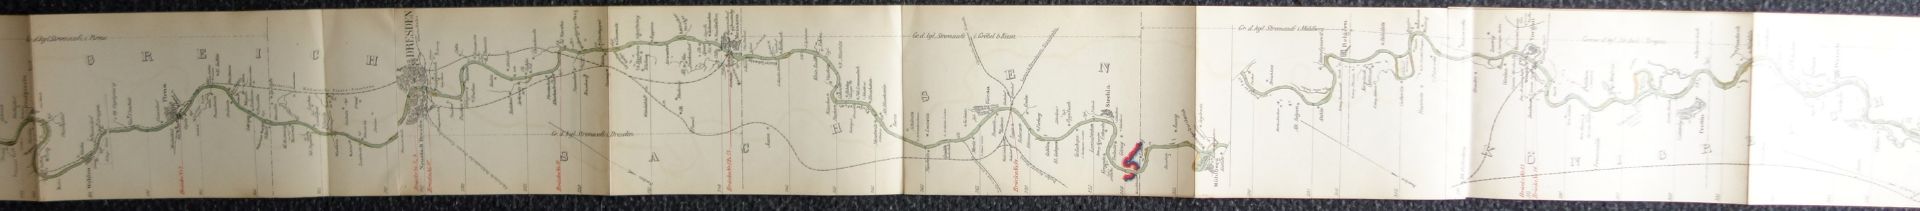 Stromkarte der Elbe und Moldau von Prag bis Hamburg, W.Platt, 1889 - Image 6 of 7